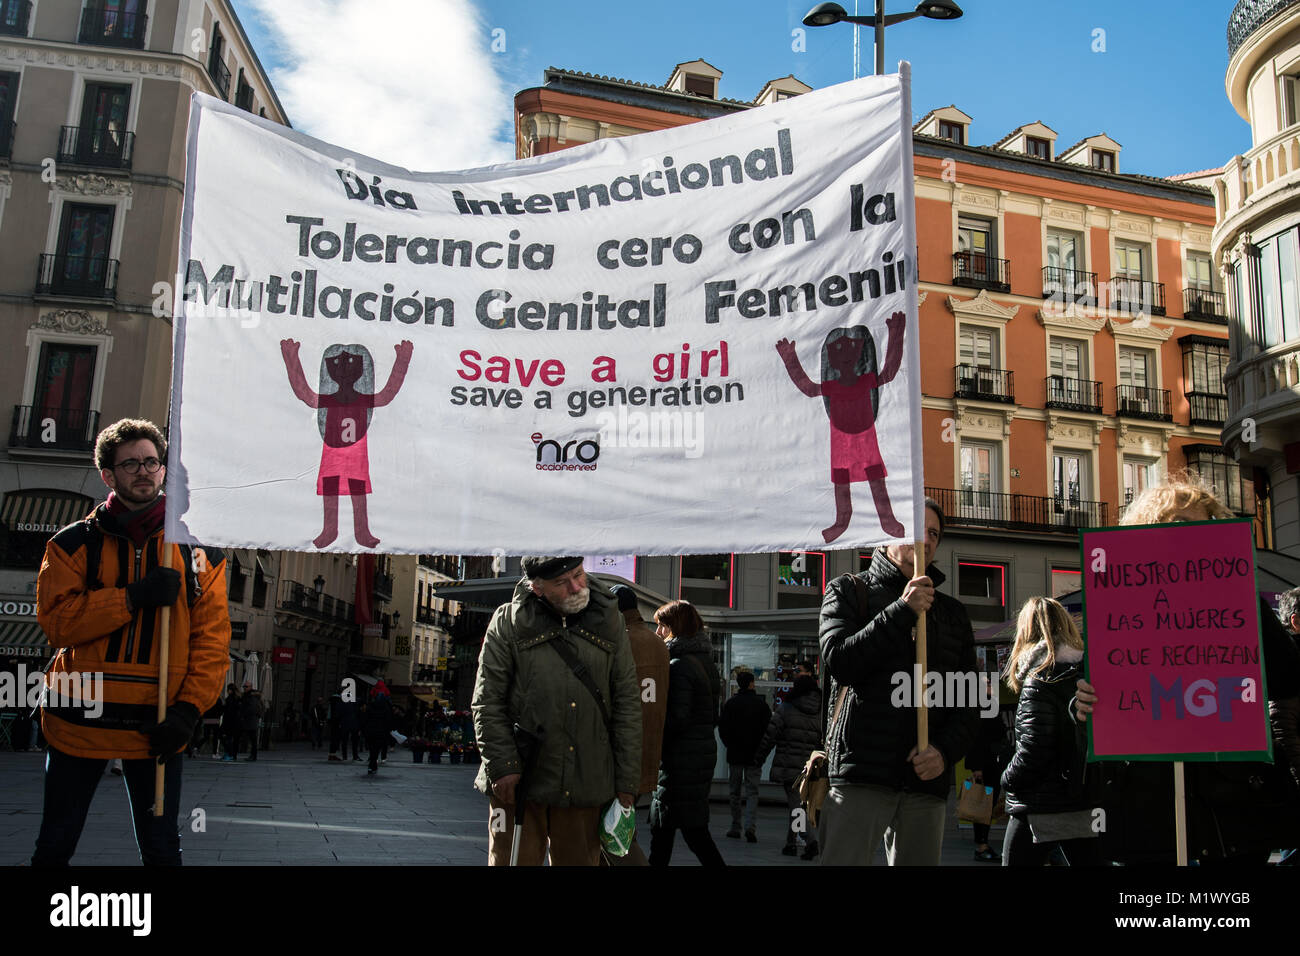 Madrid, Spagna. 3 febbraio, 2018. Persone con un banner che recita "giornata internazionale della tolleranza zero con le mutilazioni genitali femminili" protestavano contro le mutilazioni genitali femminili in Spagna a Madrid. Credito: Marcos del Mazo/Alamy Live News Foto Stock